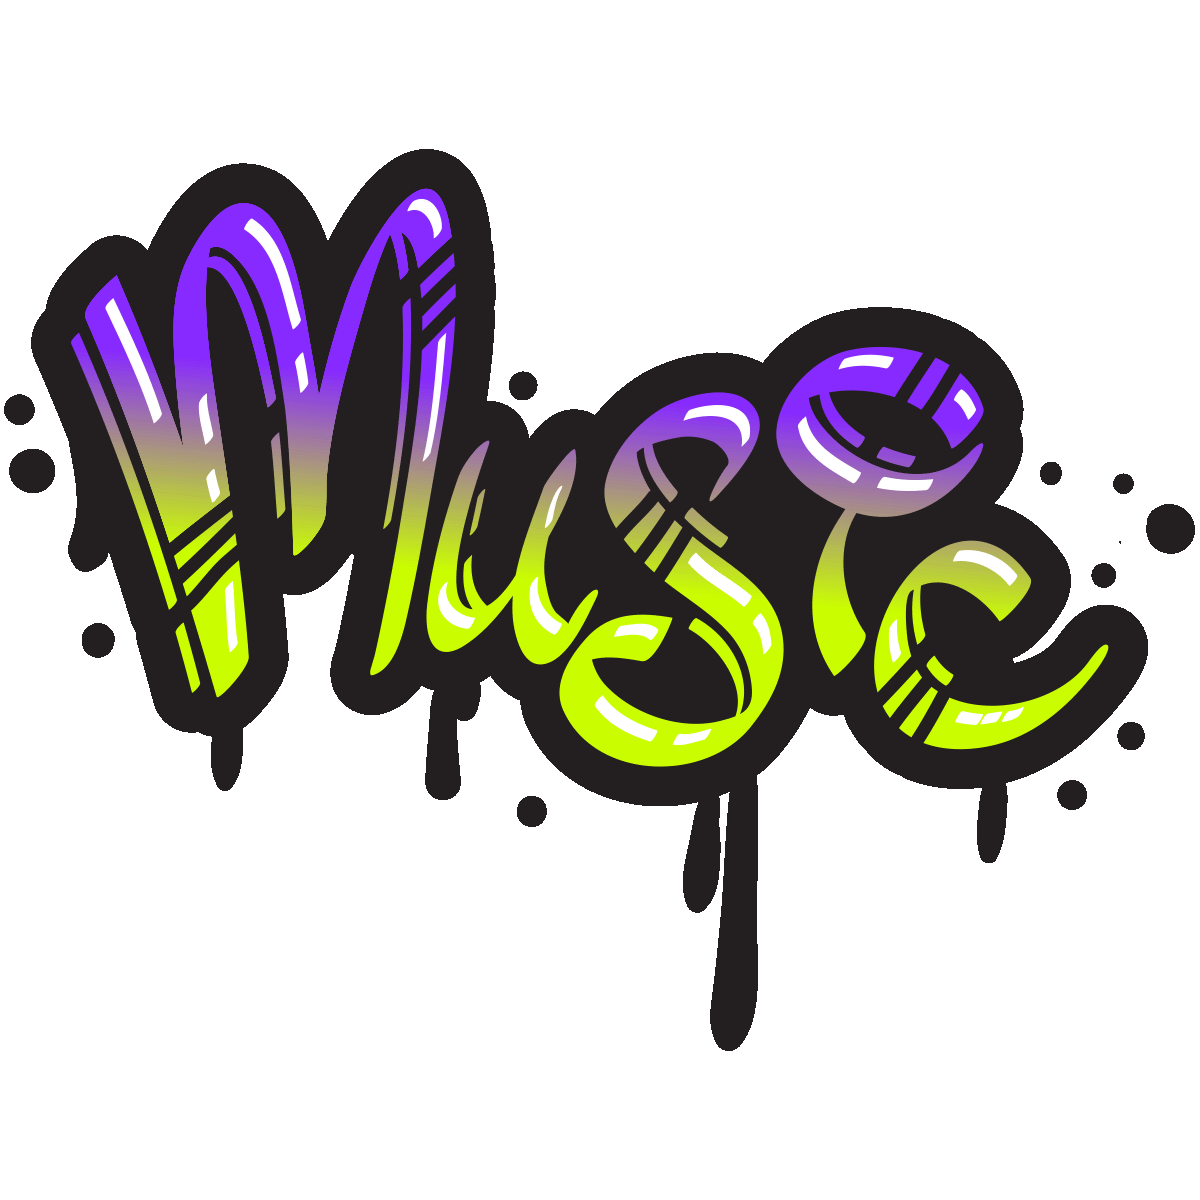 Music graffiti sticker bundle